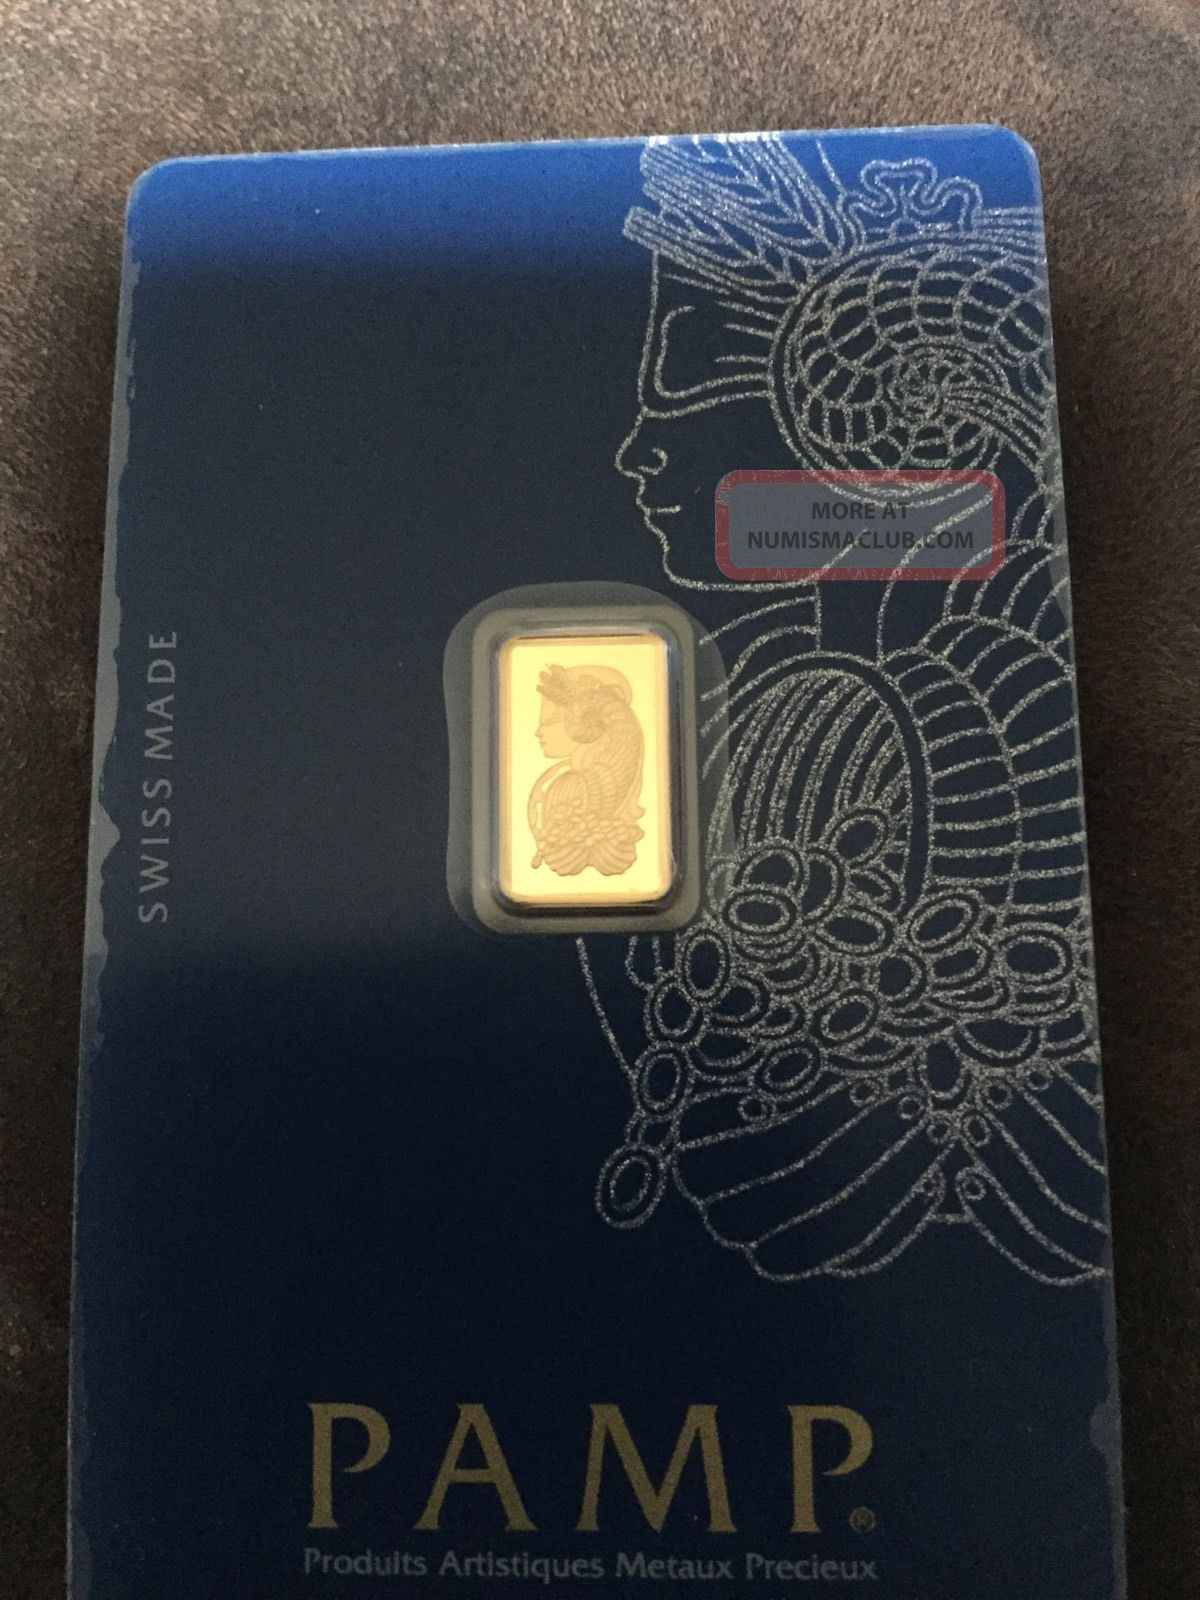 1 Gram Pamp Suisse 999. 9 Fine Gold Bar